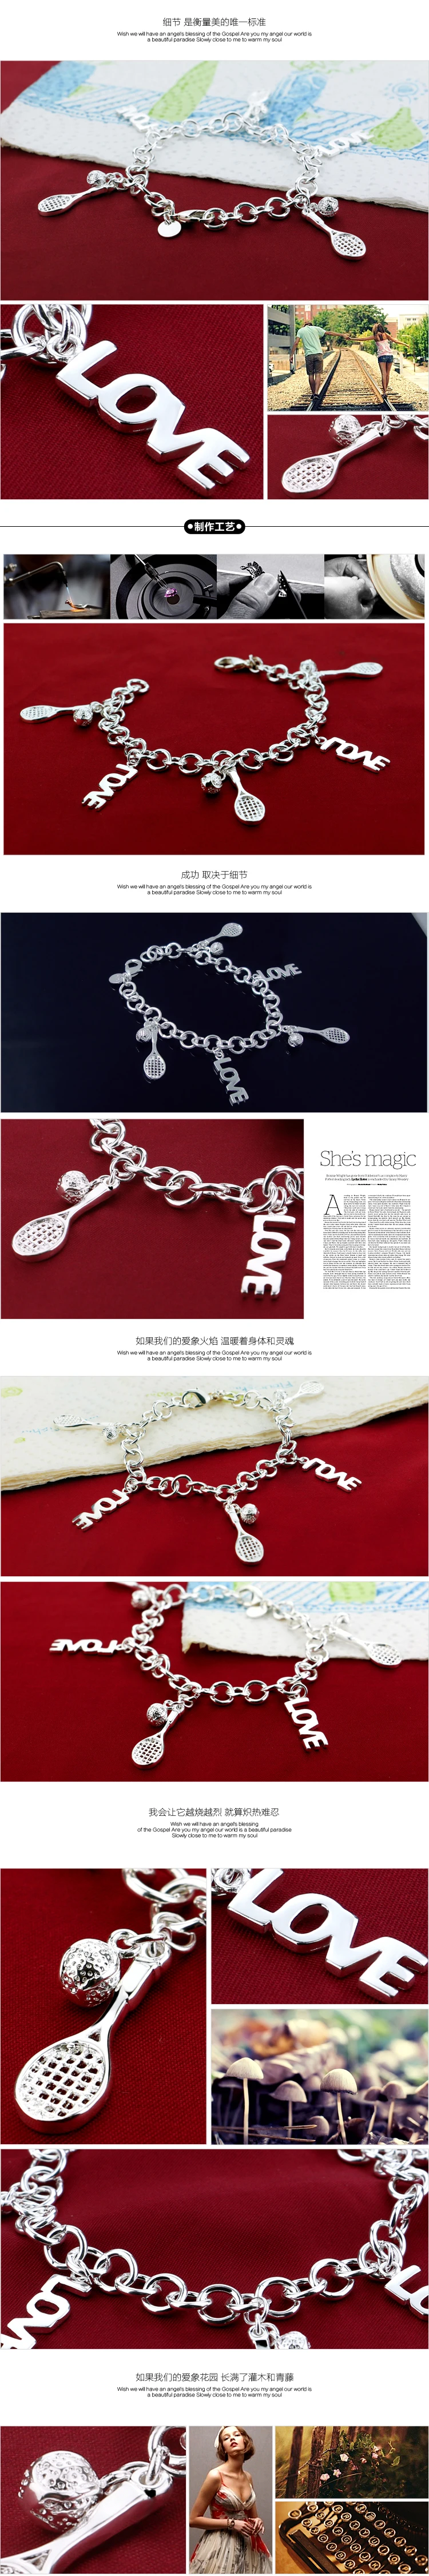 Мода 925 серебро браслет женский спортивный для отдыха Теннис кулон дизайн MS Серебряное украшение подарок на день рождения для девочек